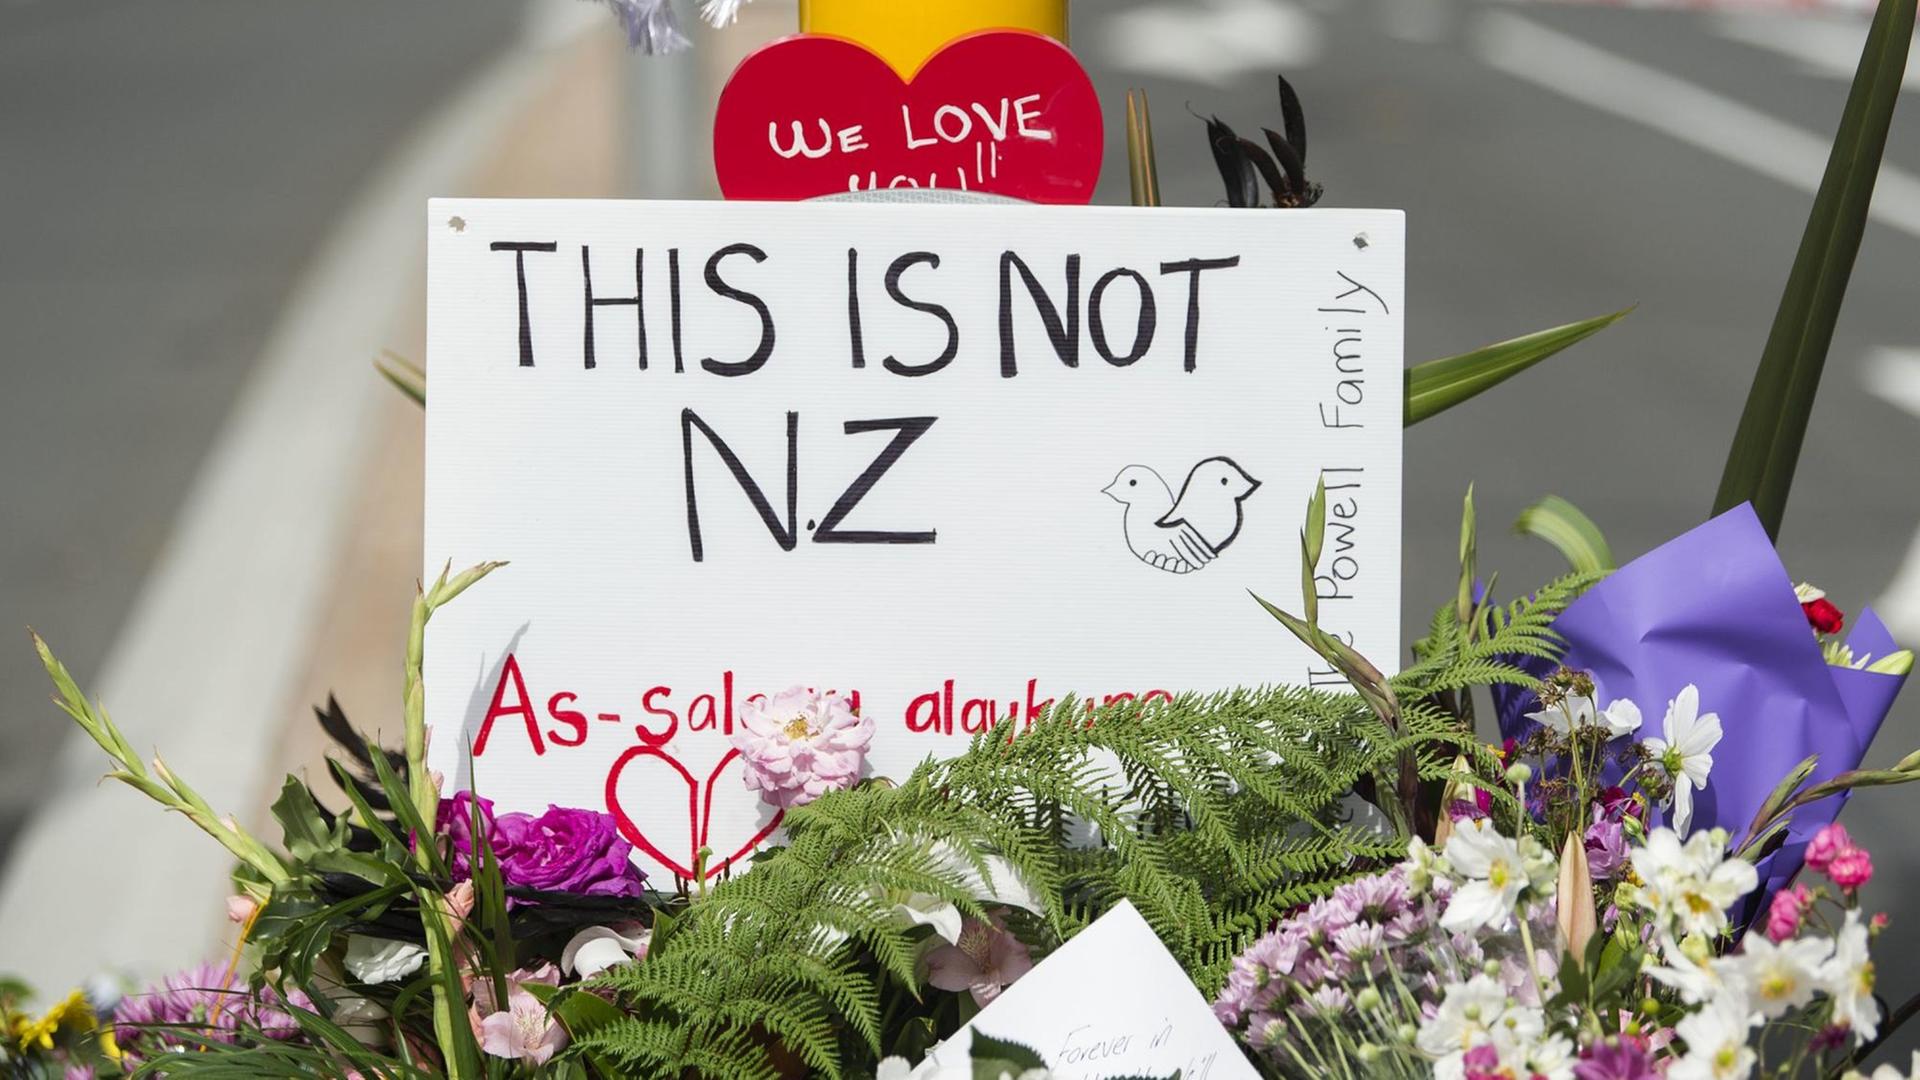 Überall in Neuseeland liegen Botschaften, Liedtexte und Gebete im Gedenken an die Opfer der Angriffe auf zwei Moscheen, bei denen 49 Menschen starben und Dutzende verletzt wurden